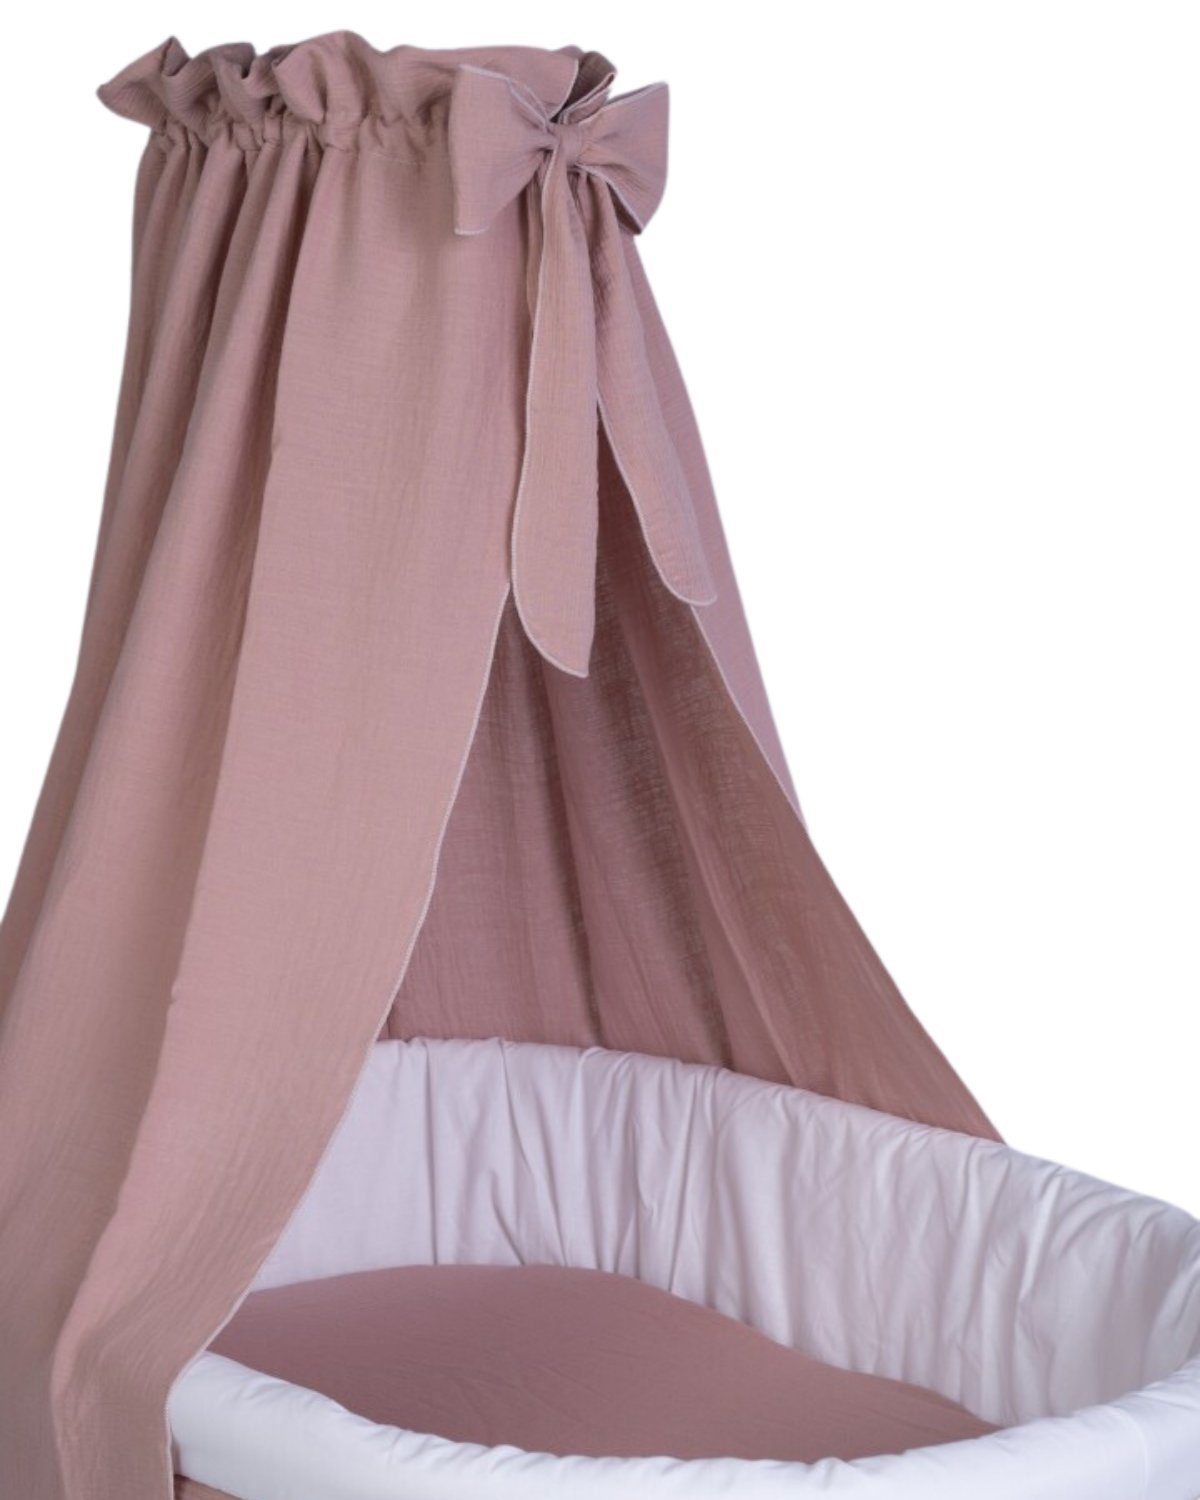 Mionido Babybett Textiles Set für Stubenwagen - Musselin rosa - 3-teilig,  Made in Germany, Handarbeit, Wiederverwendbare Verpackung